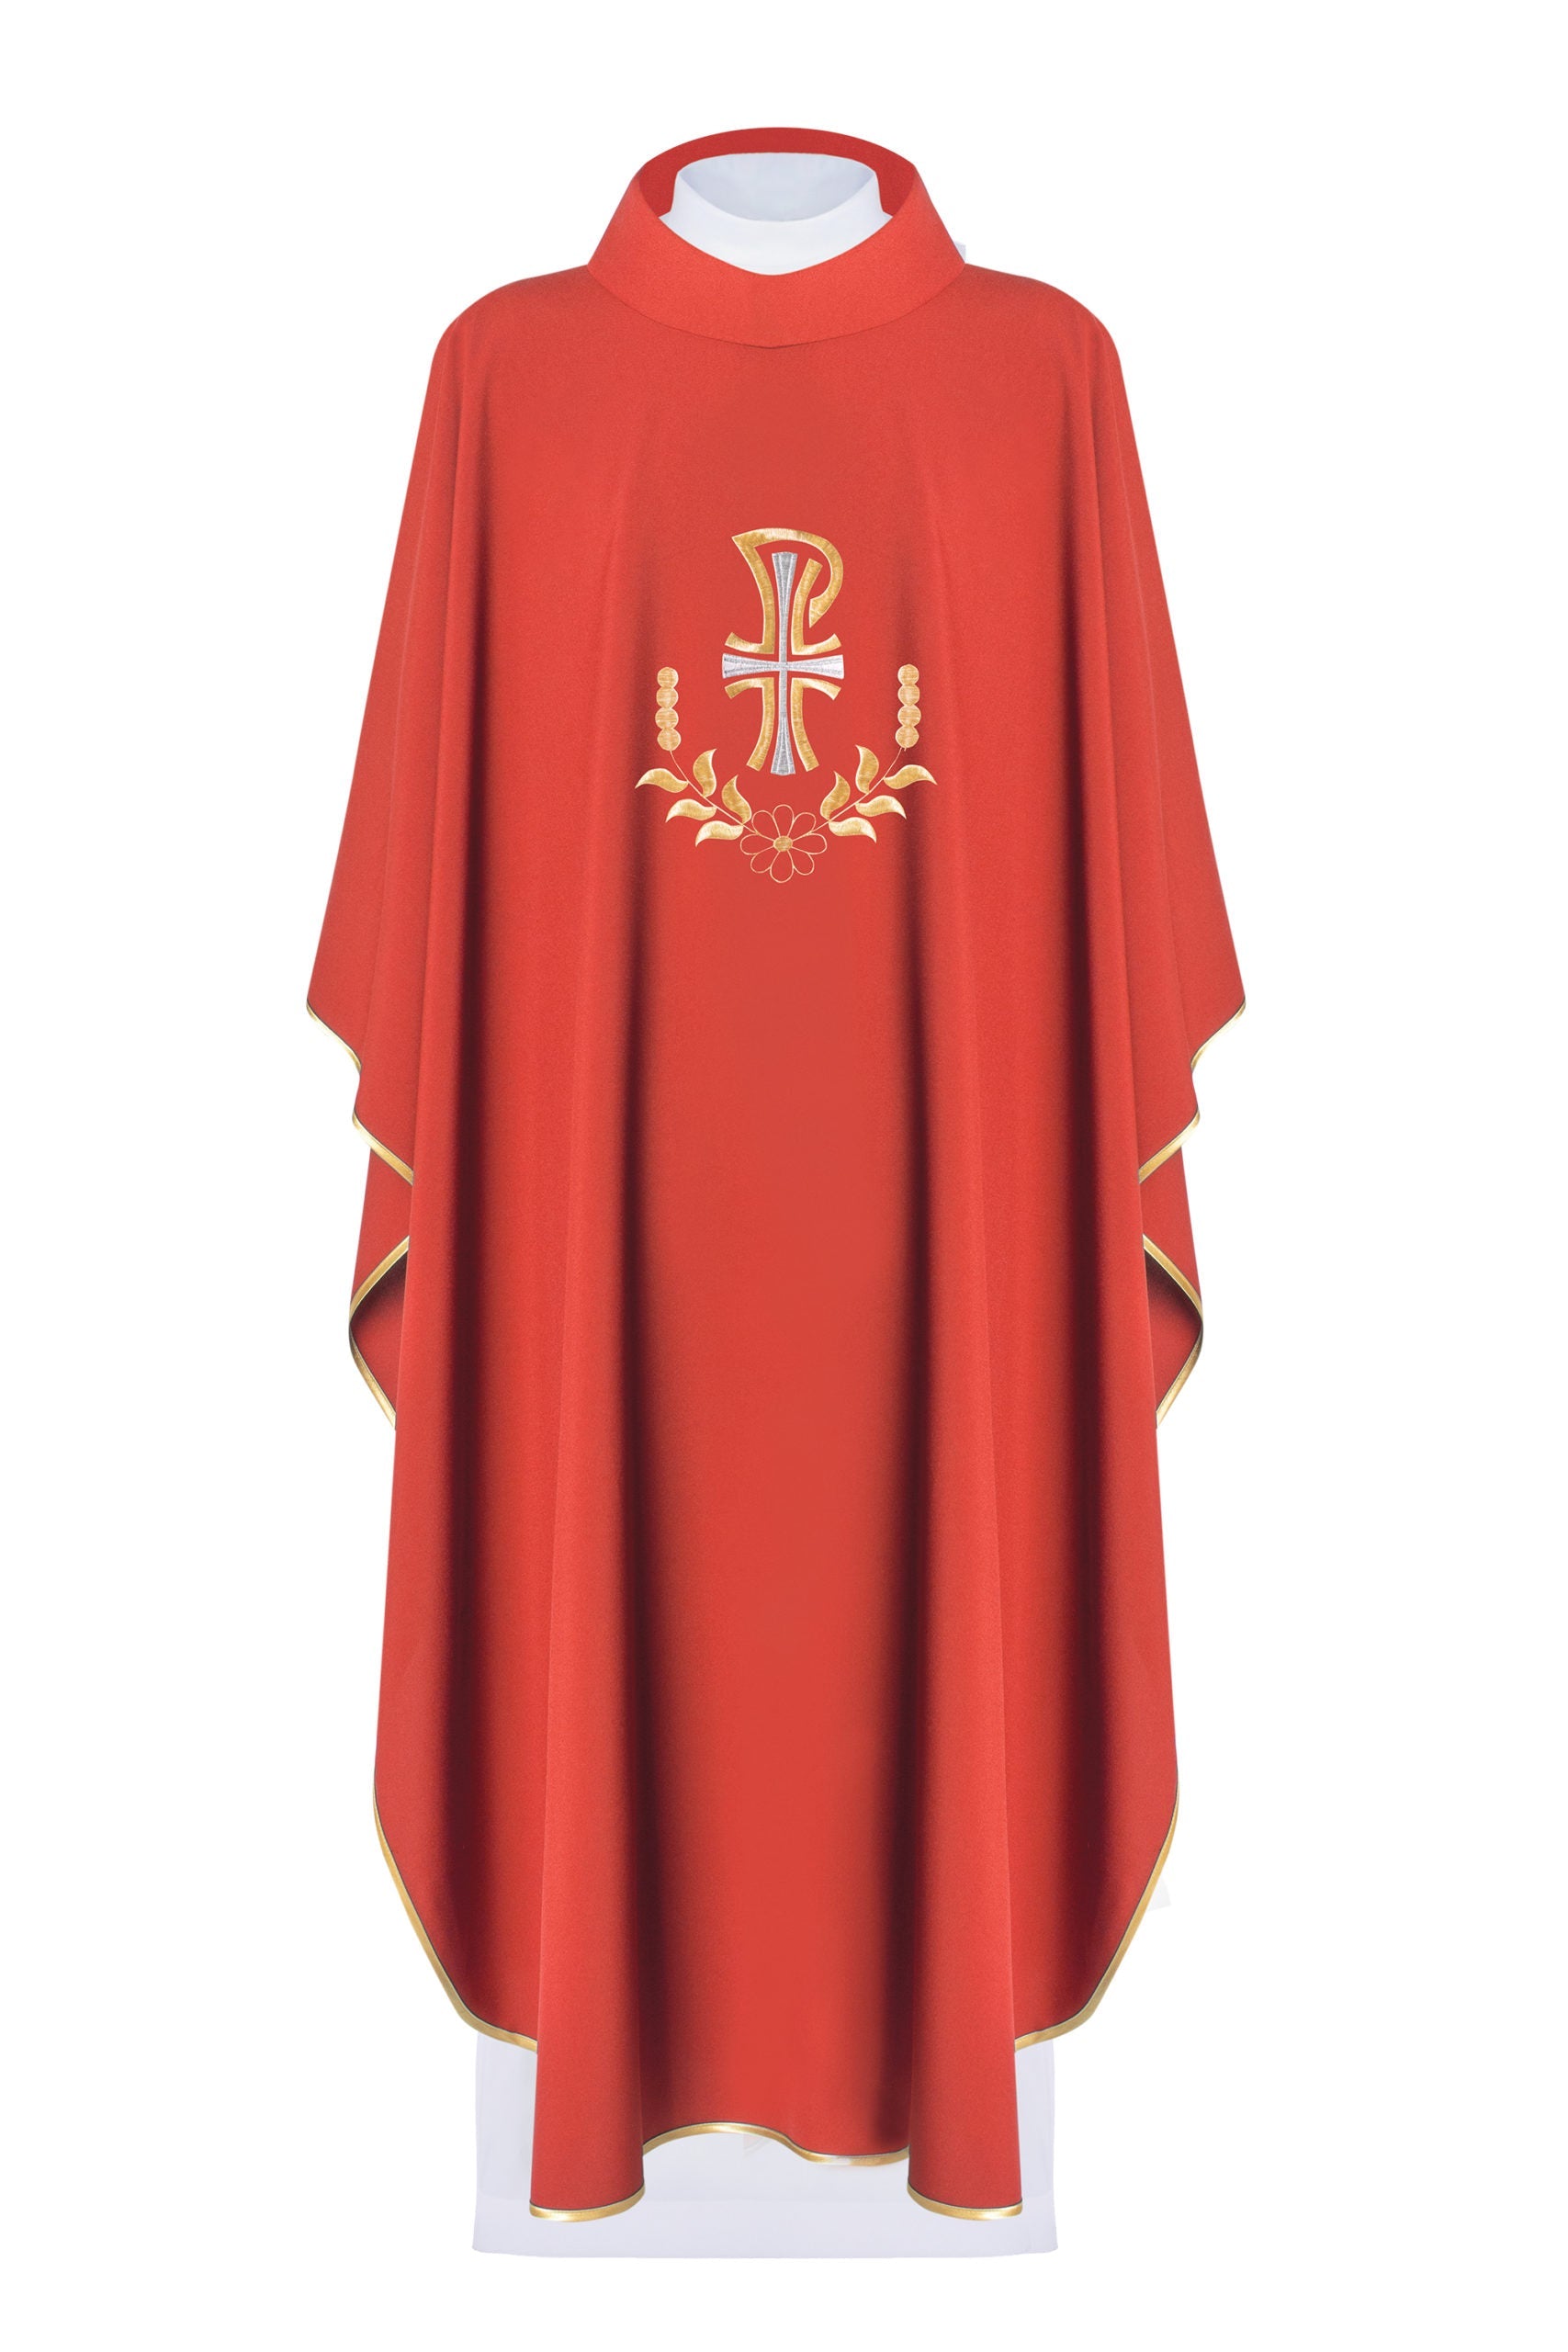 Ornat liturgiczny z haftem PAX w kolorze czerwonym